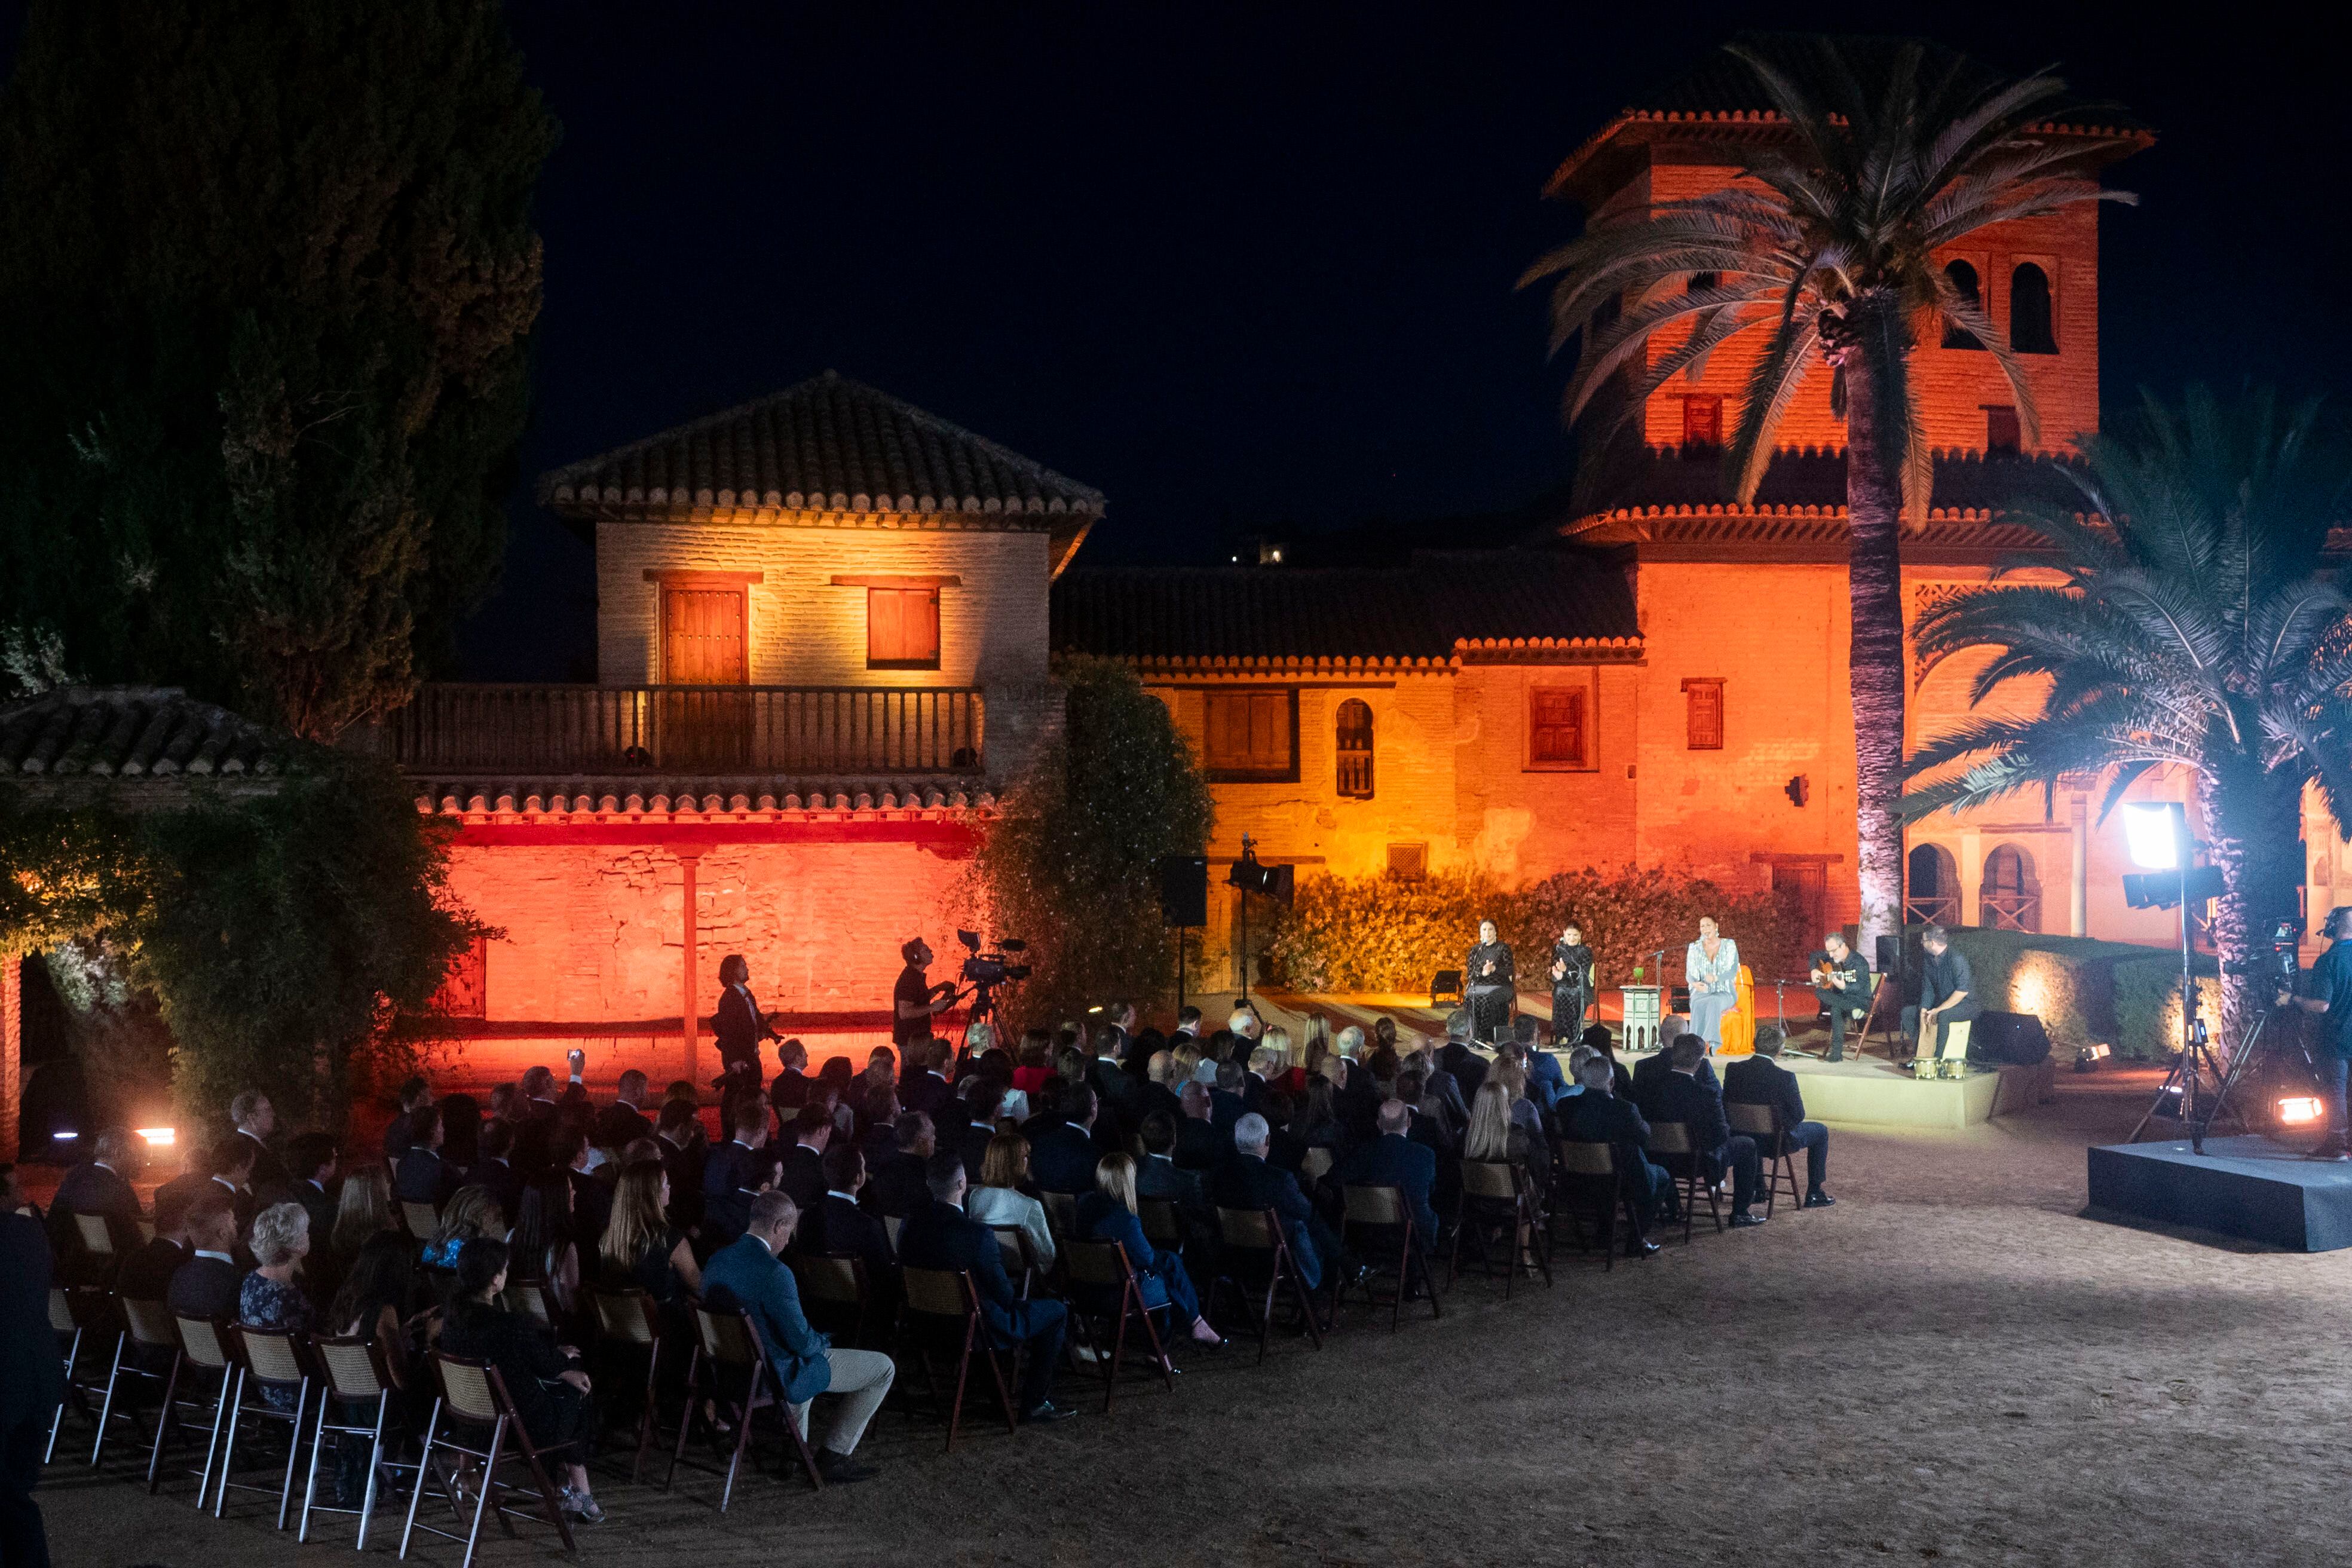 La cantaora flamenca Marina Heredia actúa durante su concierto celebrado en el interior de la Alhambra.